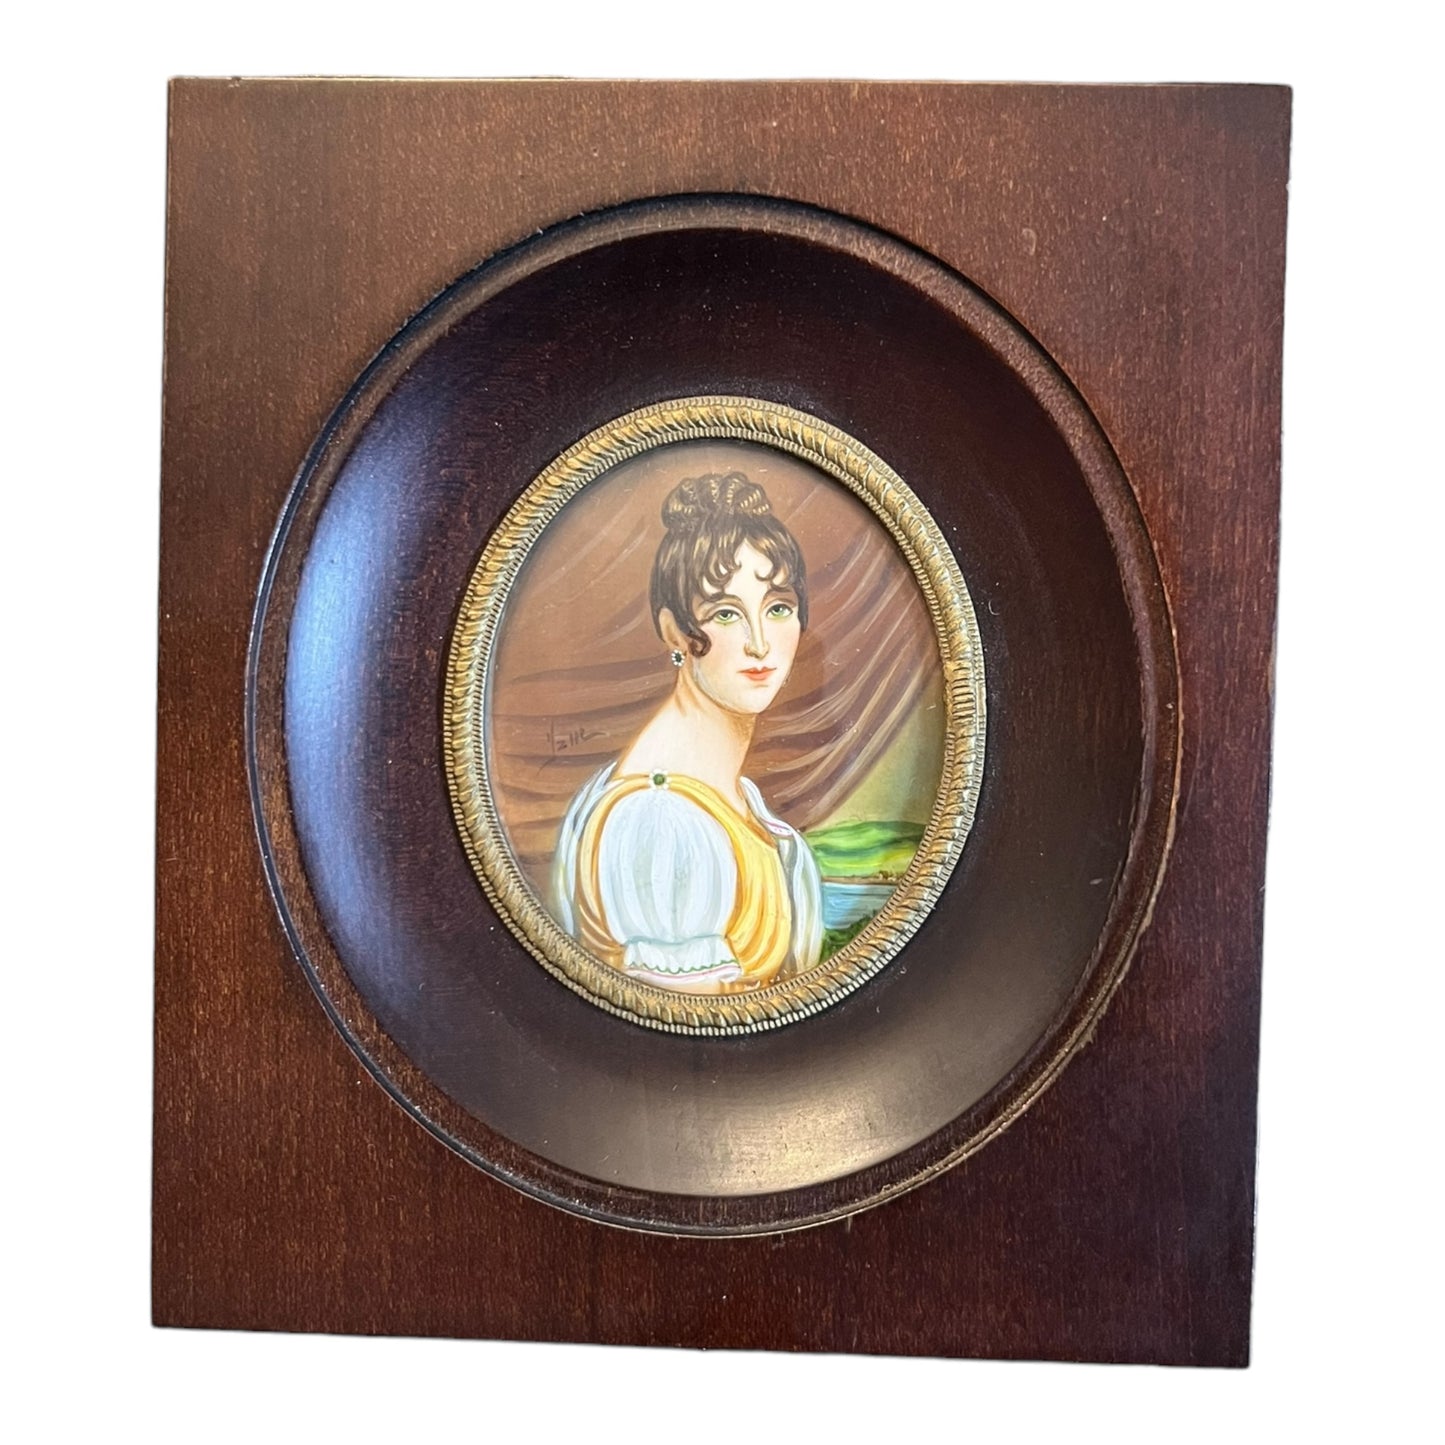 Madame Récamier miniature portrait on ivory